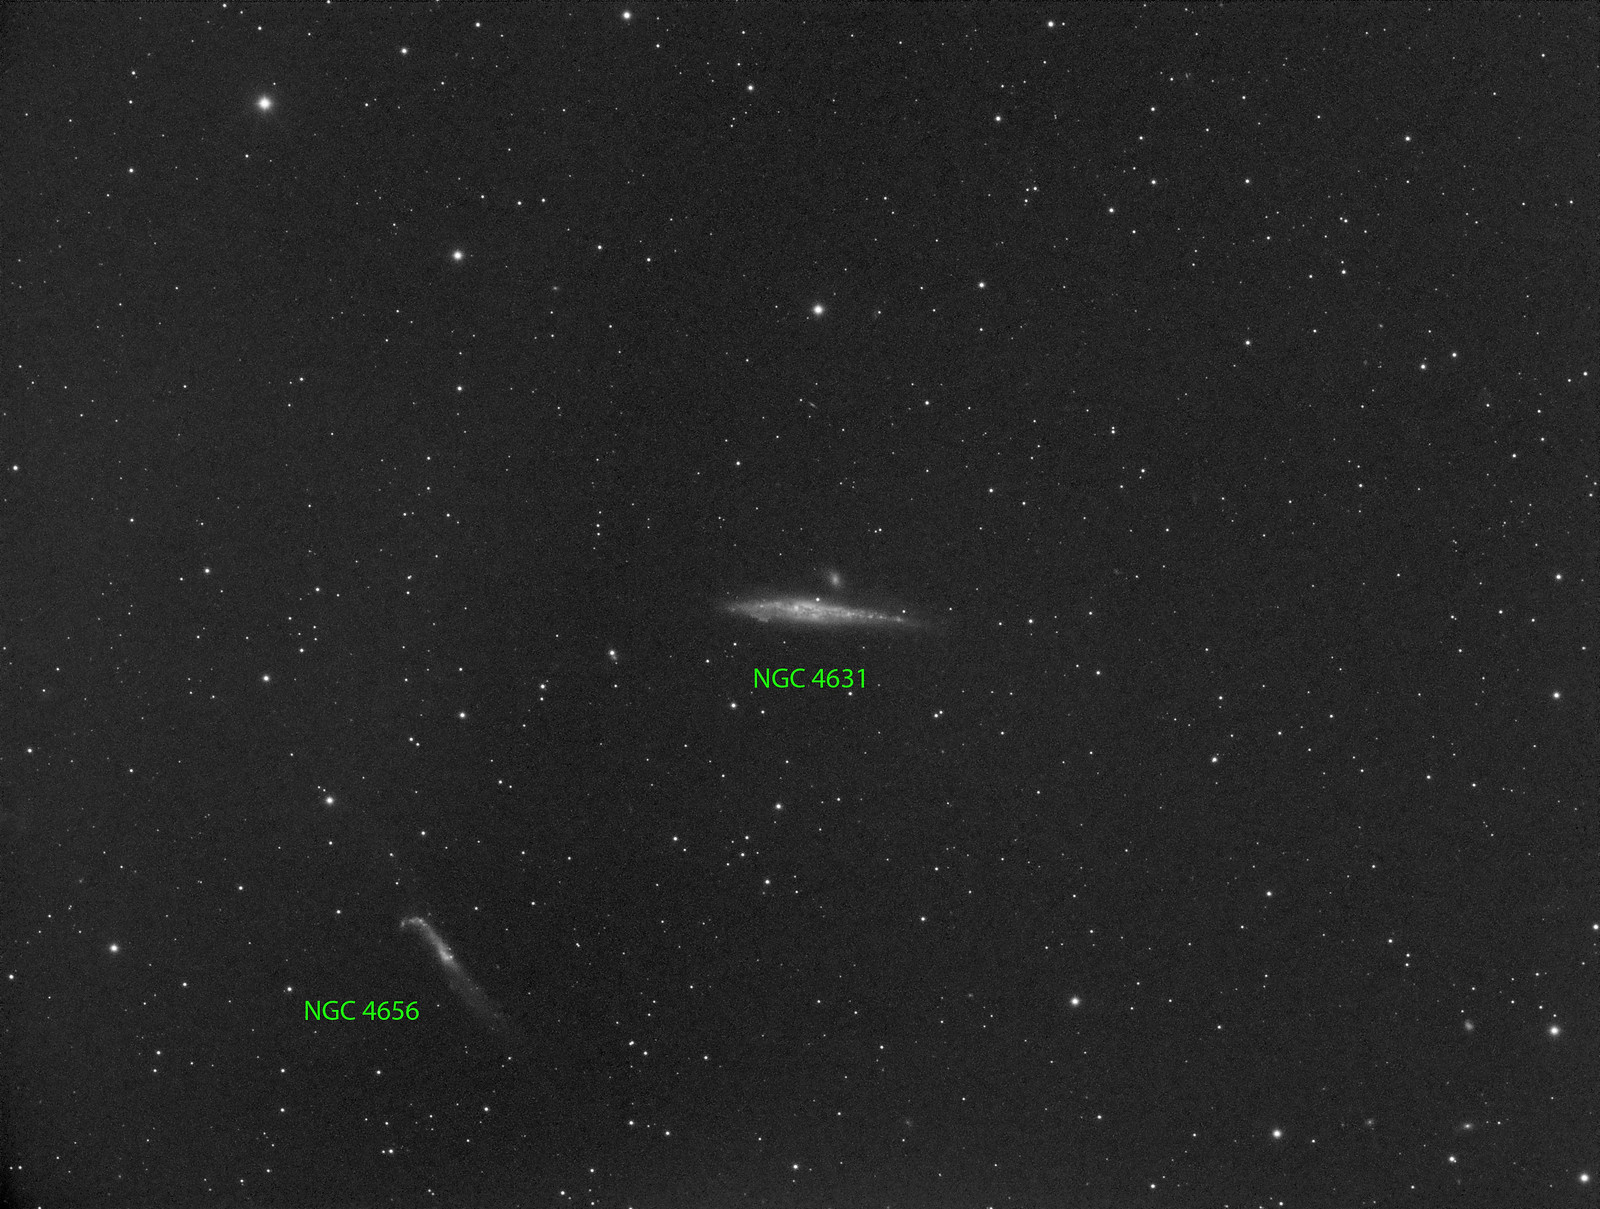 032 - NGC 4631  - Luminance